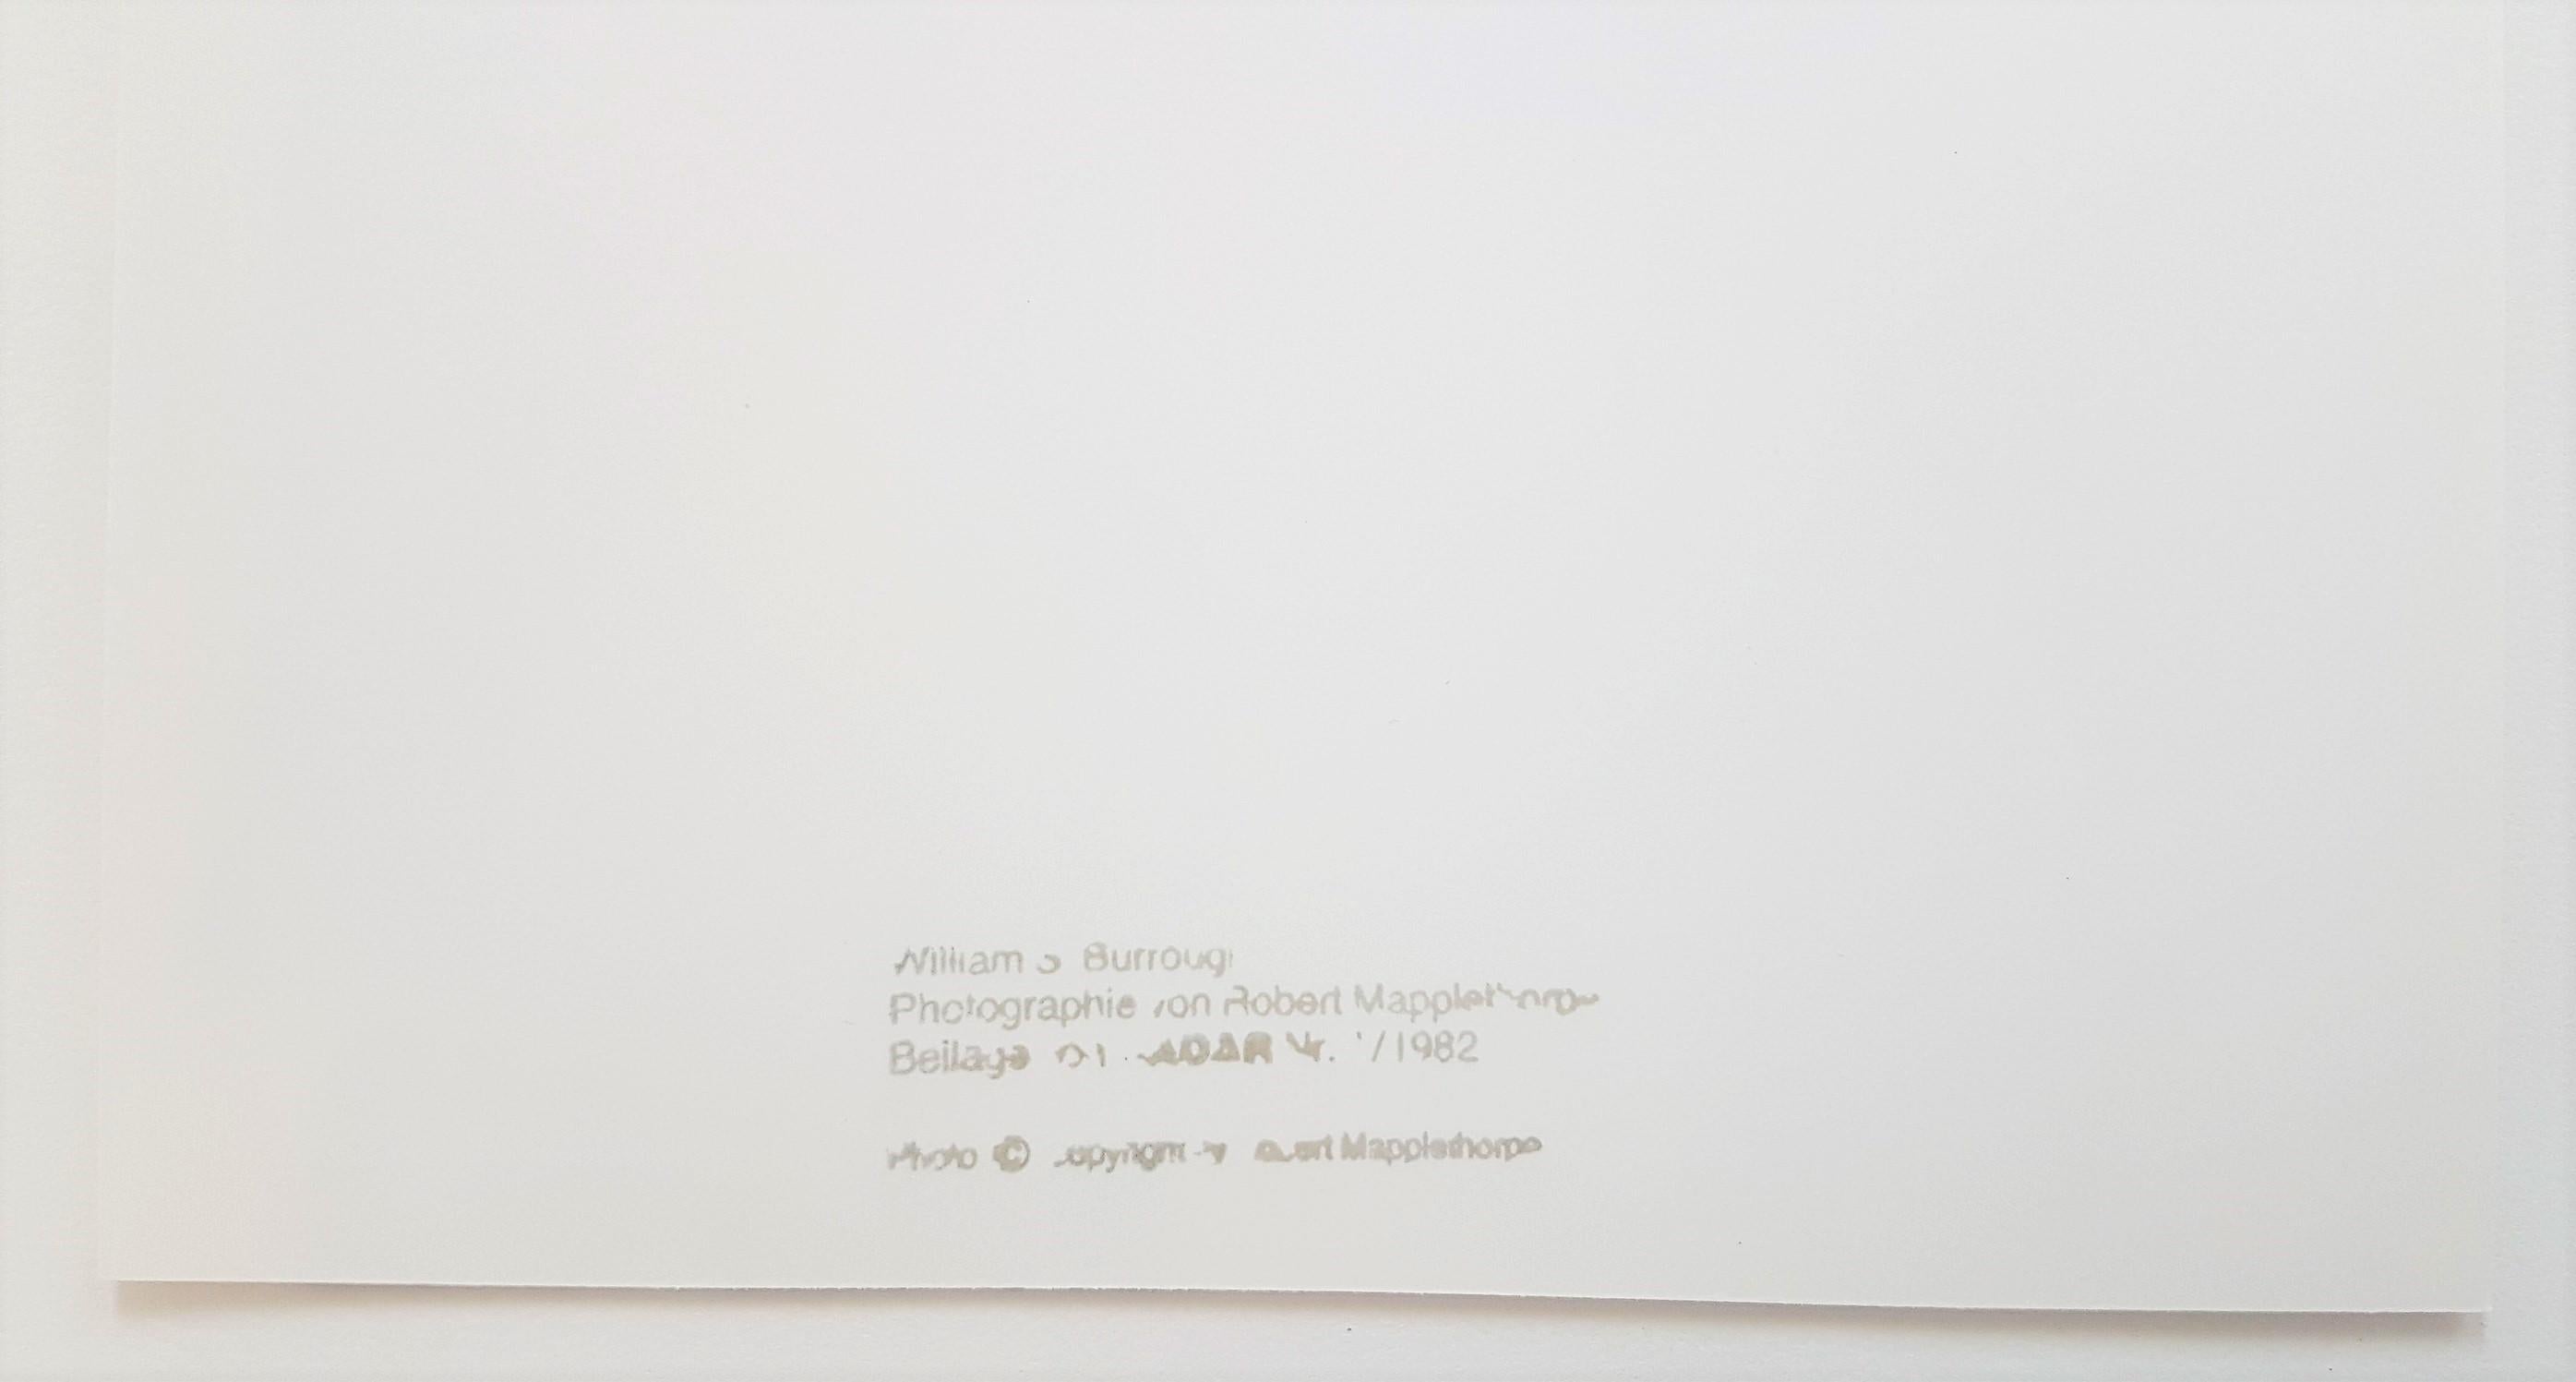 Robert Mapplethorpe
William S. Burroughs
Fotografie, Silbergelatineabzug
Jahr: 1982
Größe: 9,8 × 7,8 Zoll 
Verso gestempelt
Begleitet von einem Radar, Basel, Edition A.L.A.G., 1982; Text in Deutsch 
Gallery COA bereitgestellt

Robert Mapplethorpe